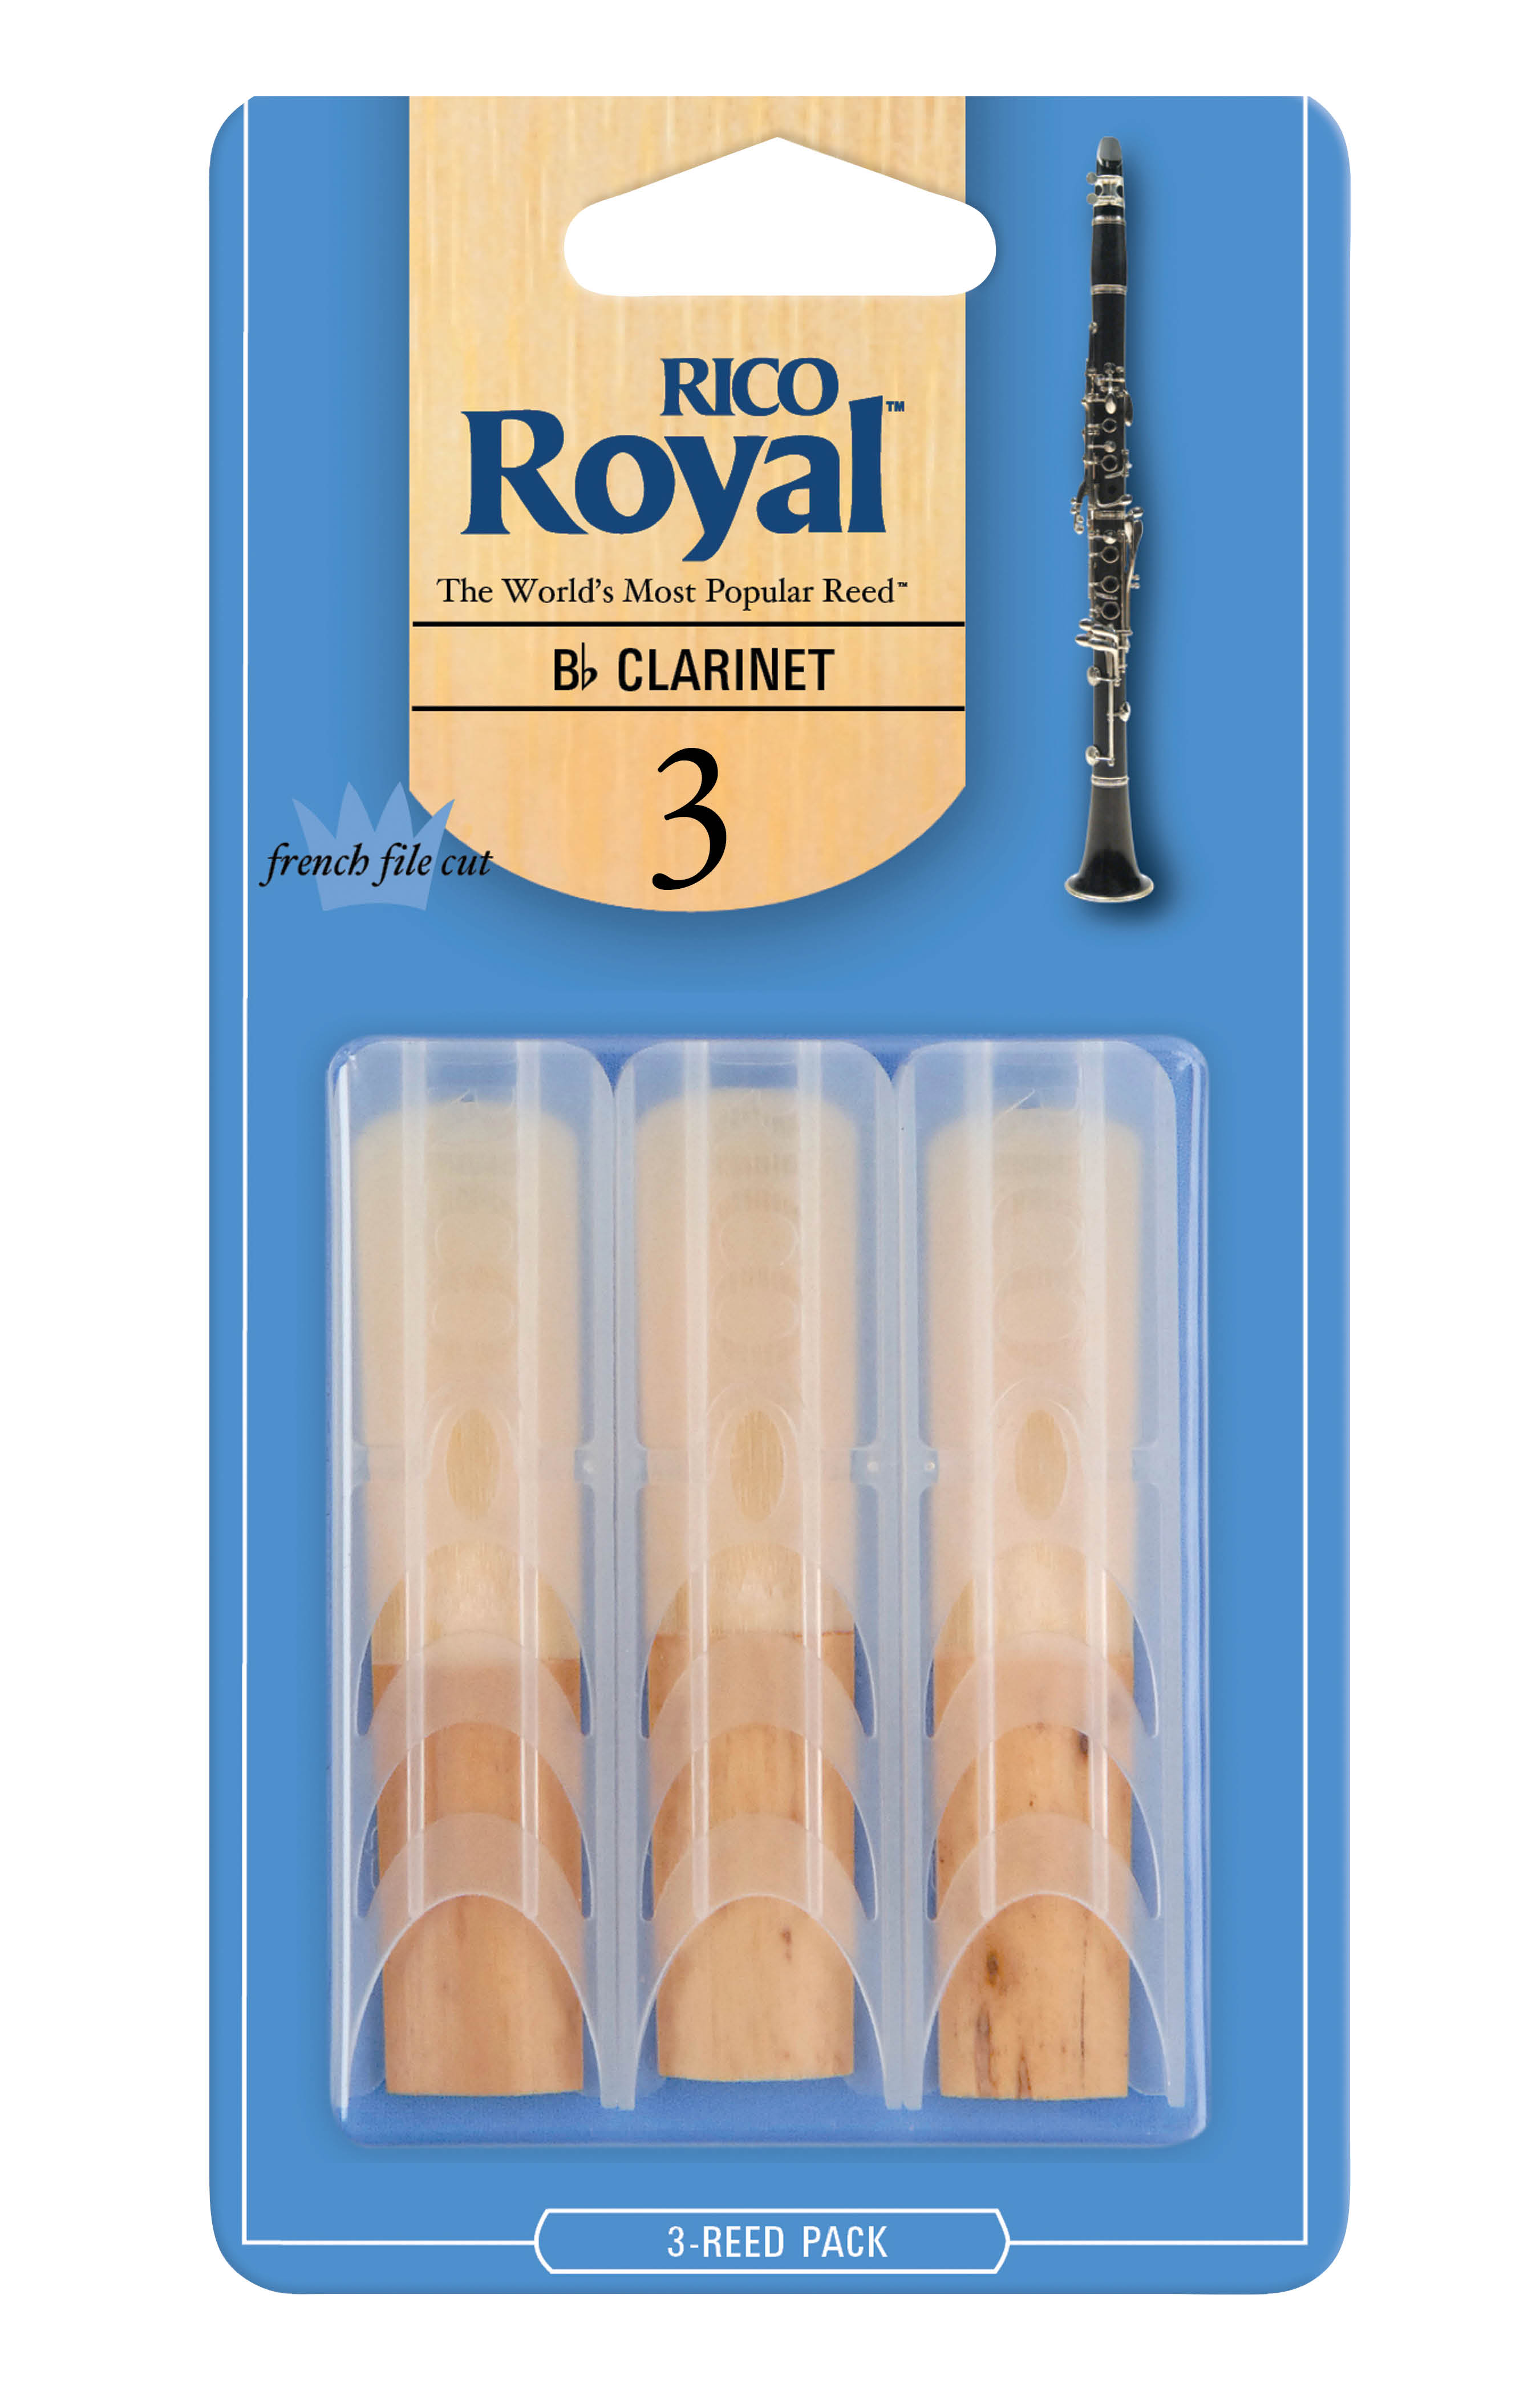 RICO ROYAL Rico Royal Bb Clarinet Reeds, Strength 3, 3-pack